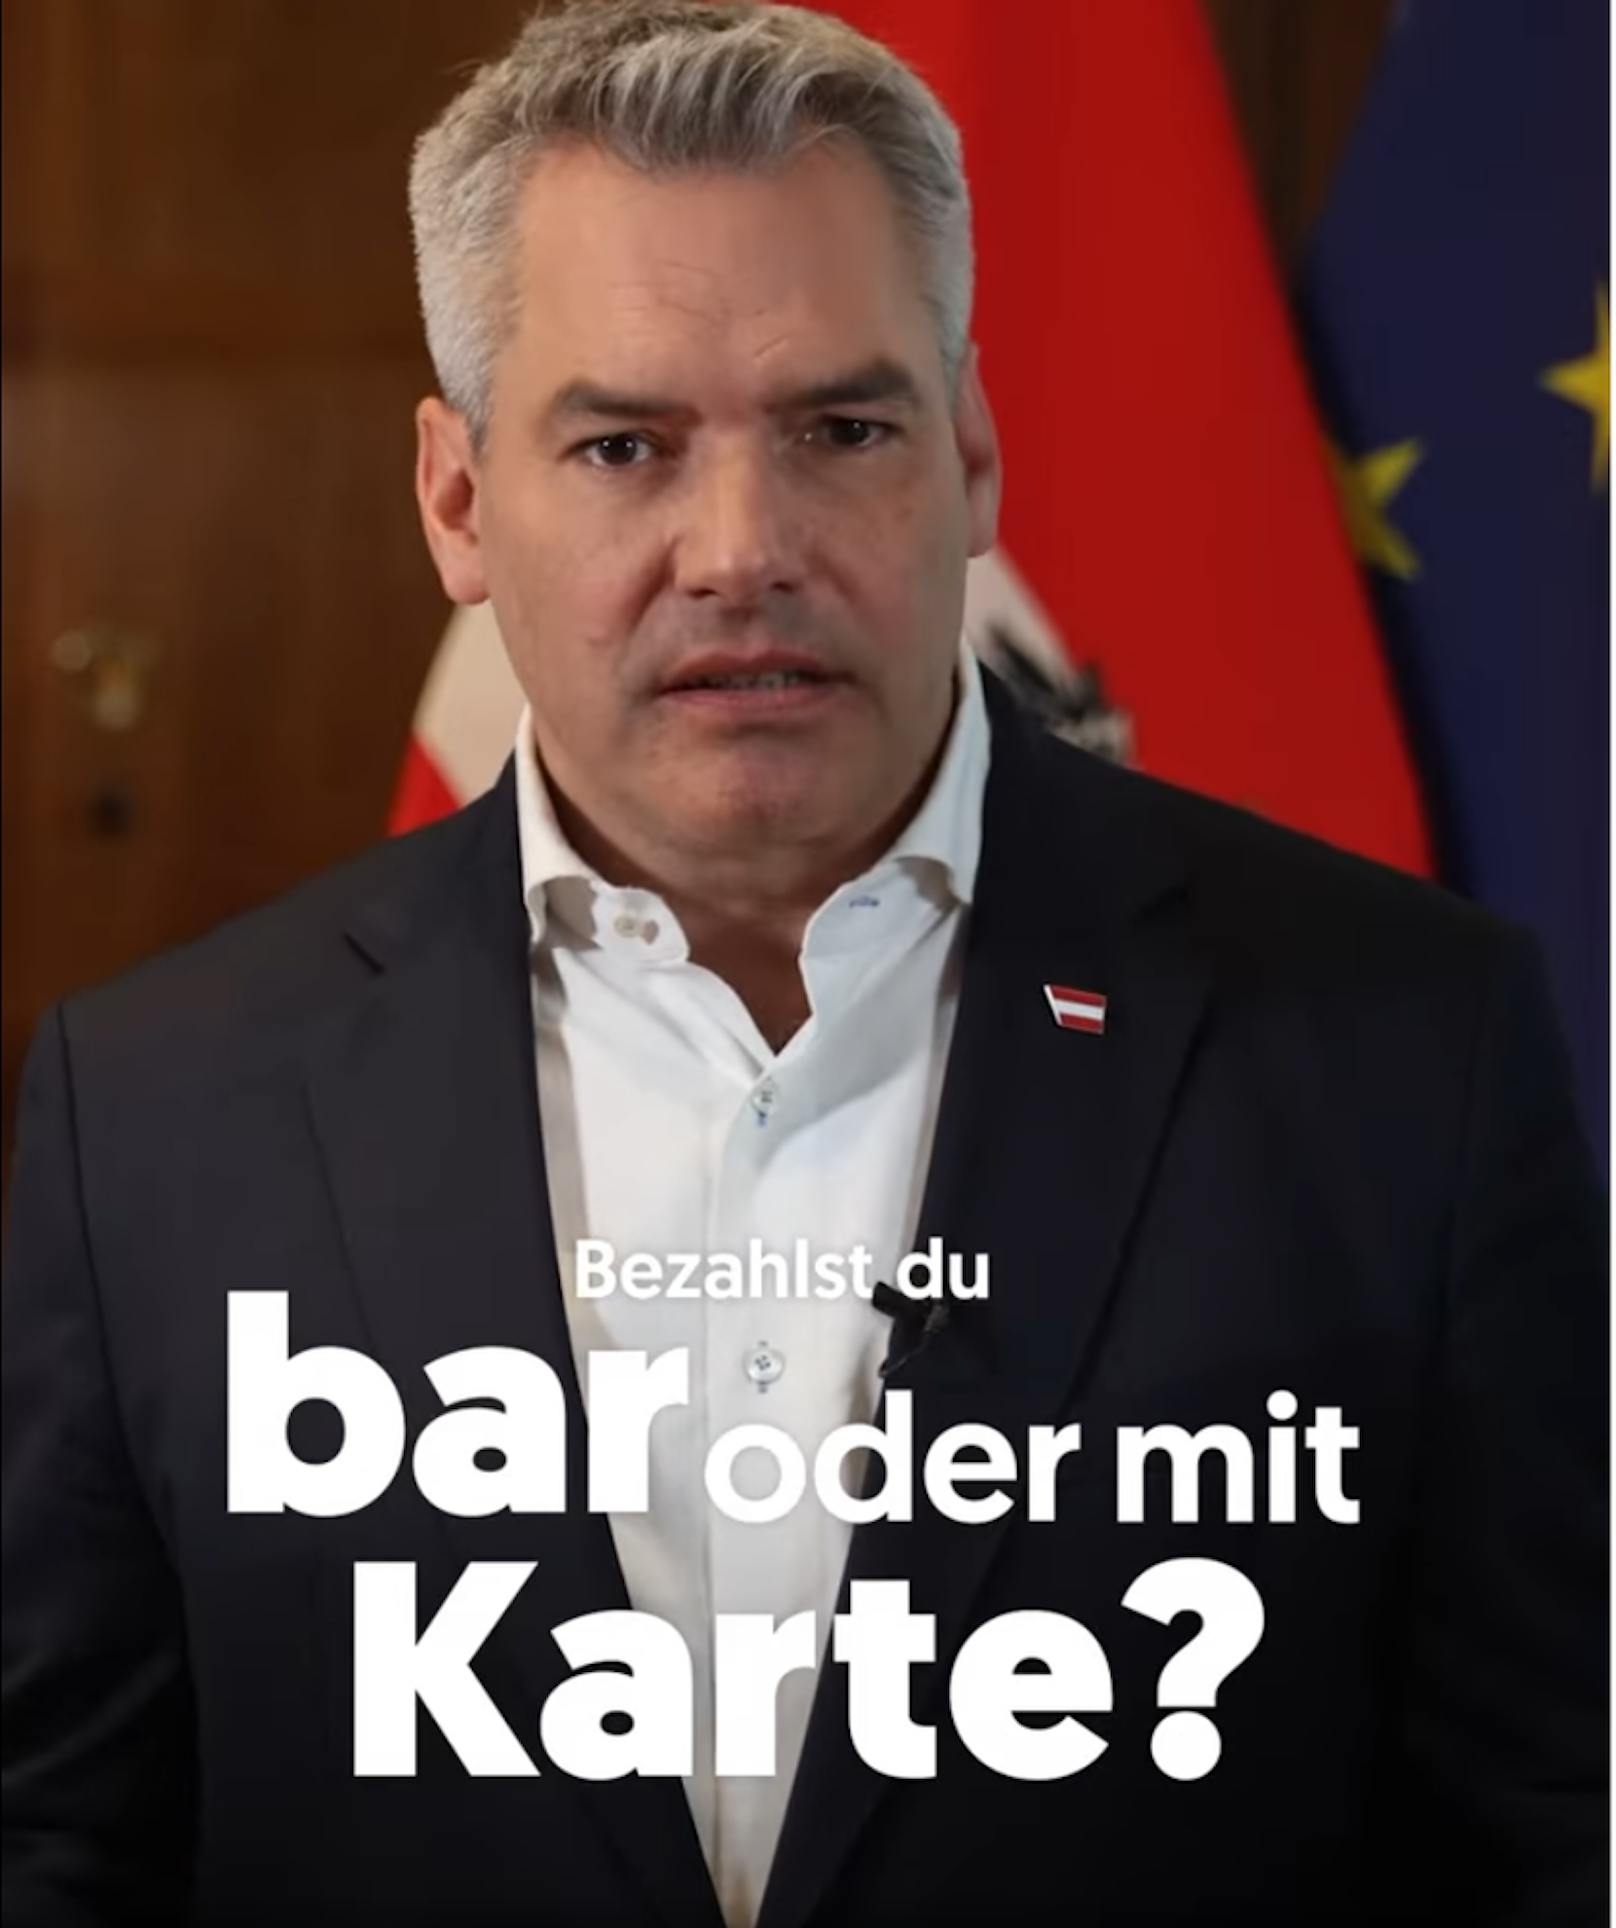 Nach der FPÖ fährt nun auch die ÖVP eine Kampagne zum Schutze des Bargelds.